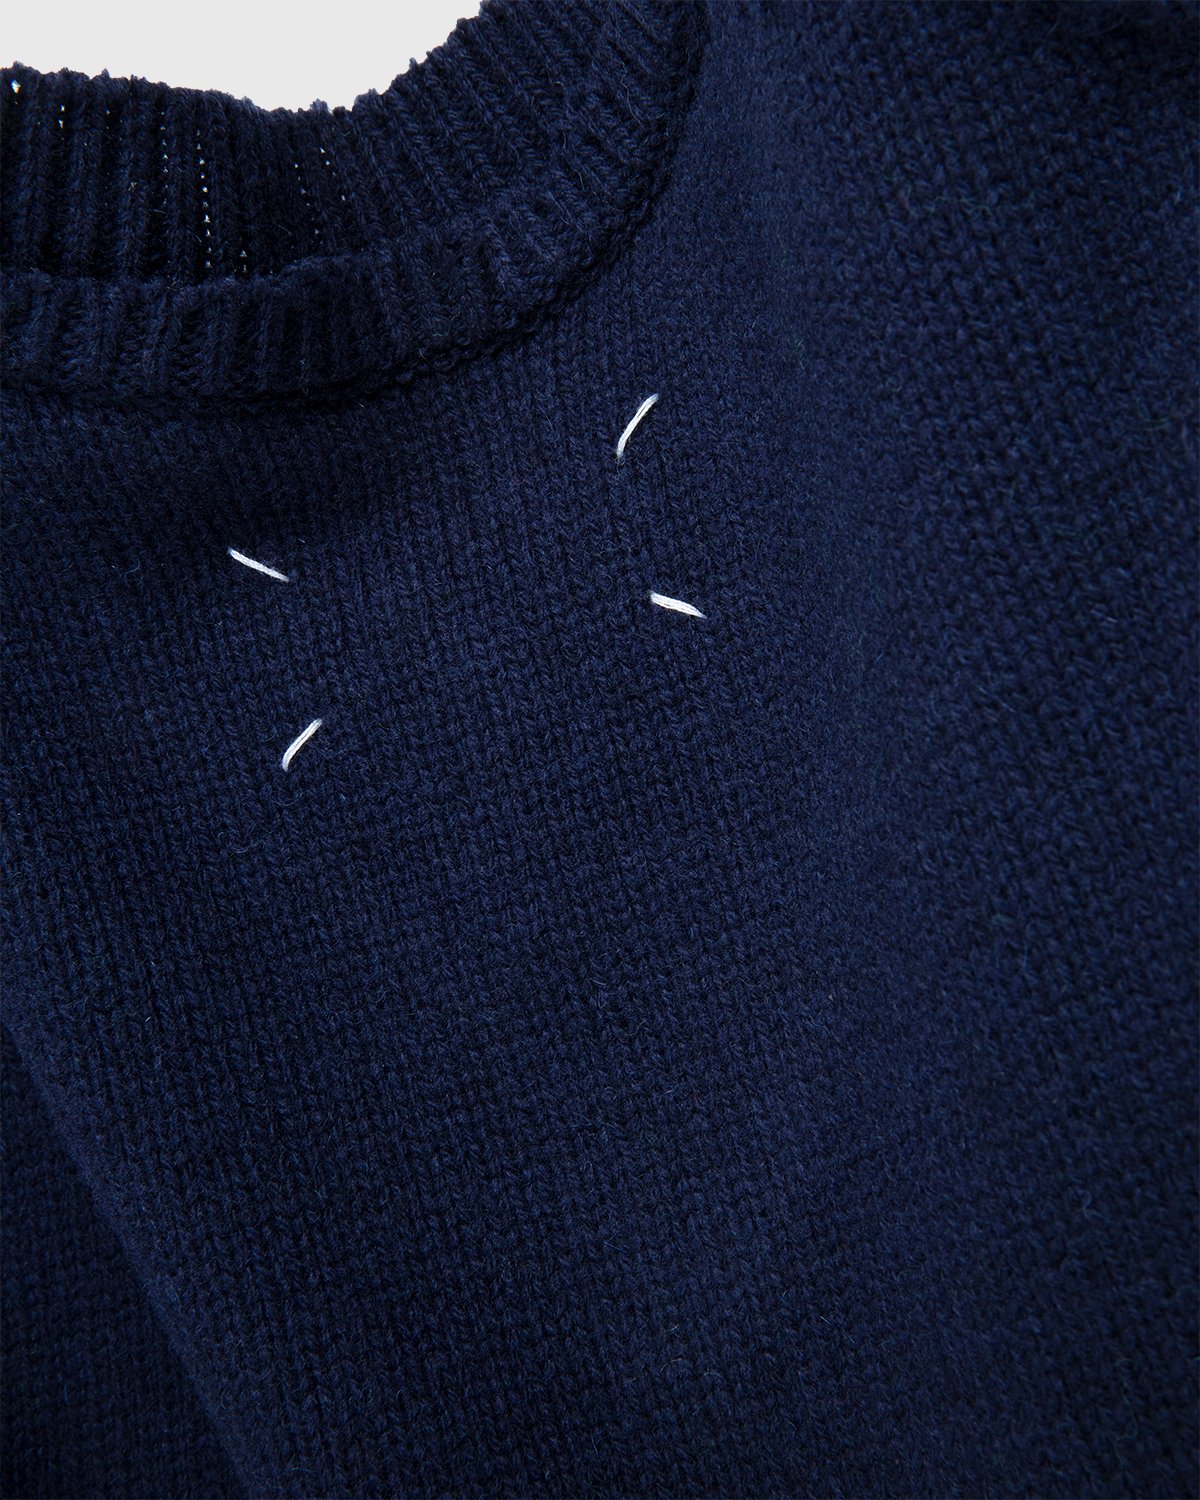 Maison Margiela - Sweater Navy - Clothing - Blue - Image 4